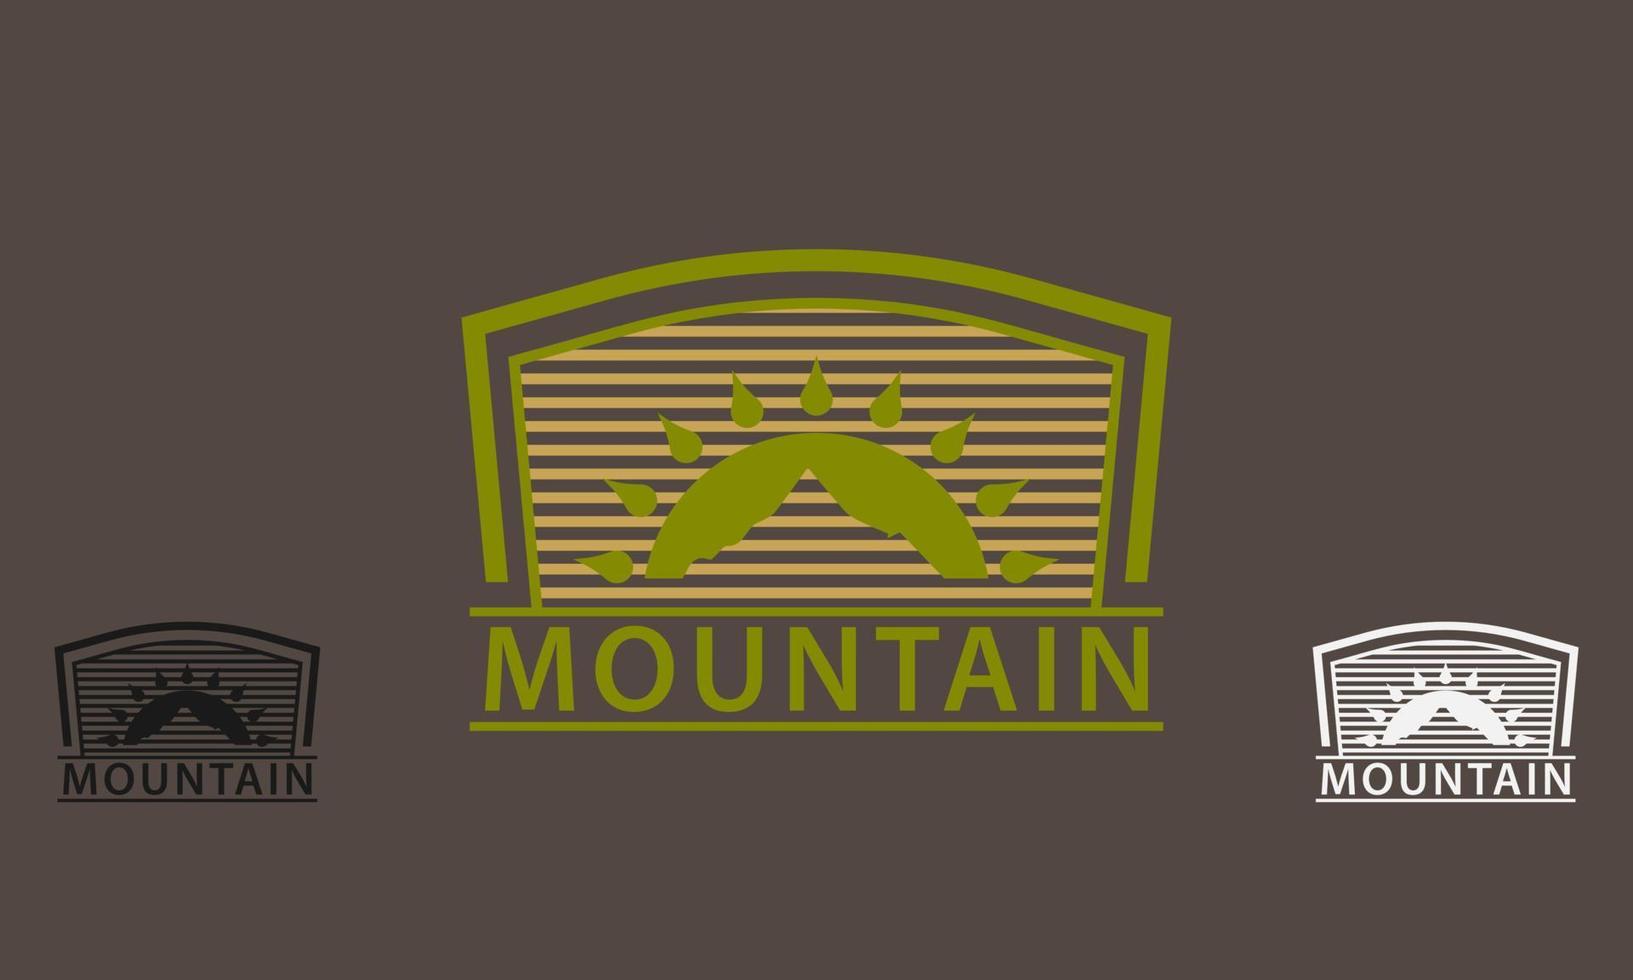 élément de montagne étoile dans une icône de logo de fond rayé vecteur